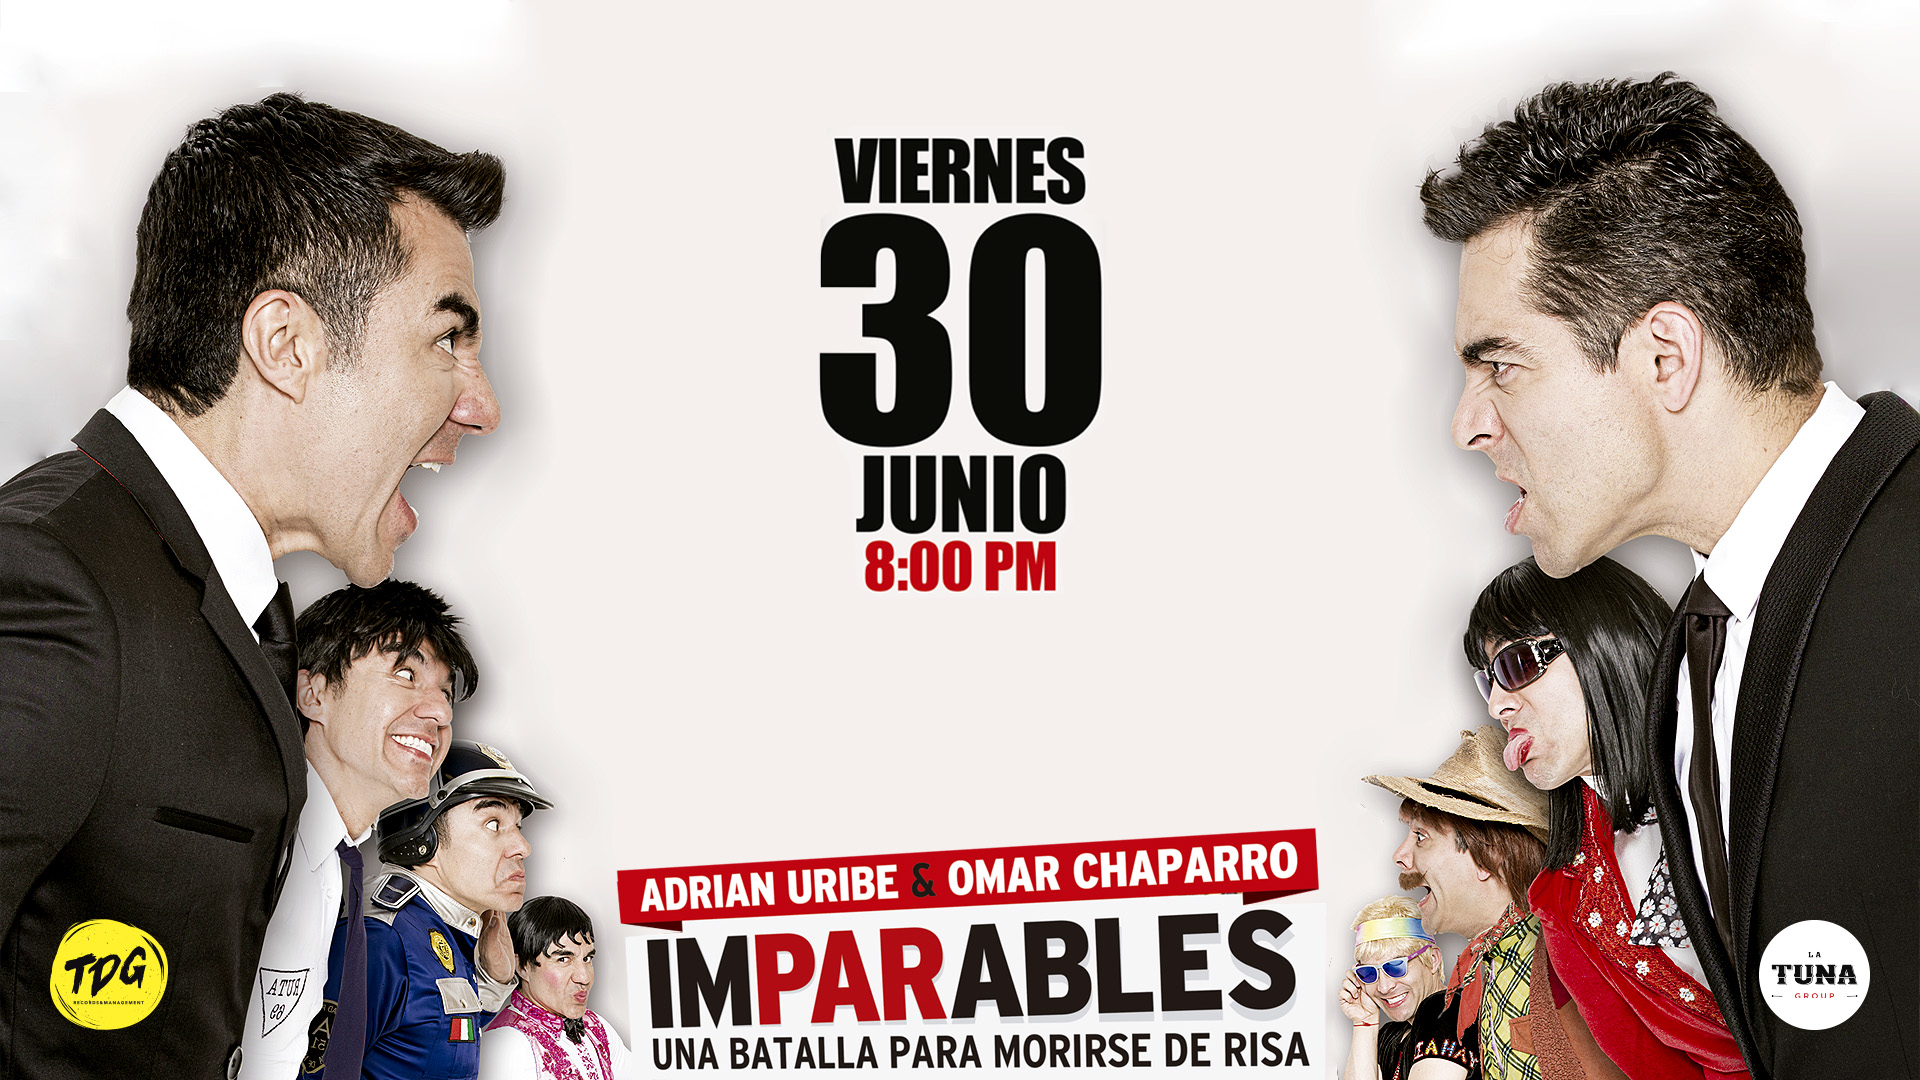 Adrián Uribe & Omar Chaparro presentan IMPARABLES, El Show!